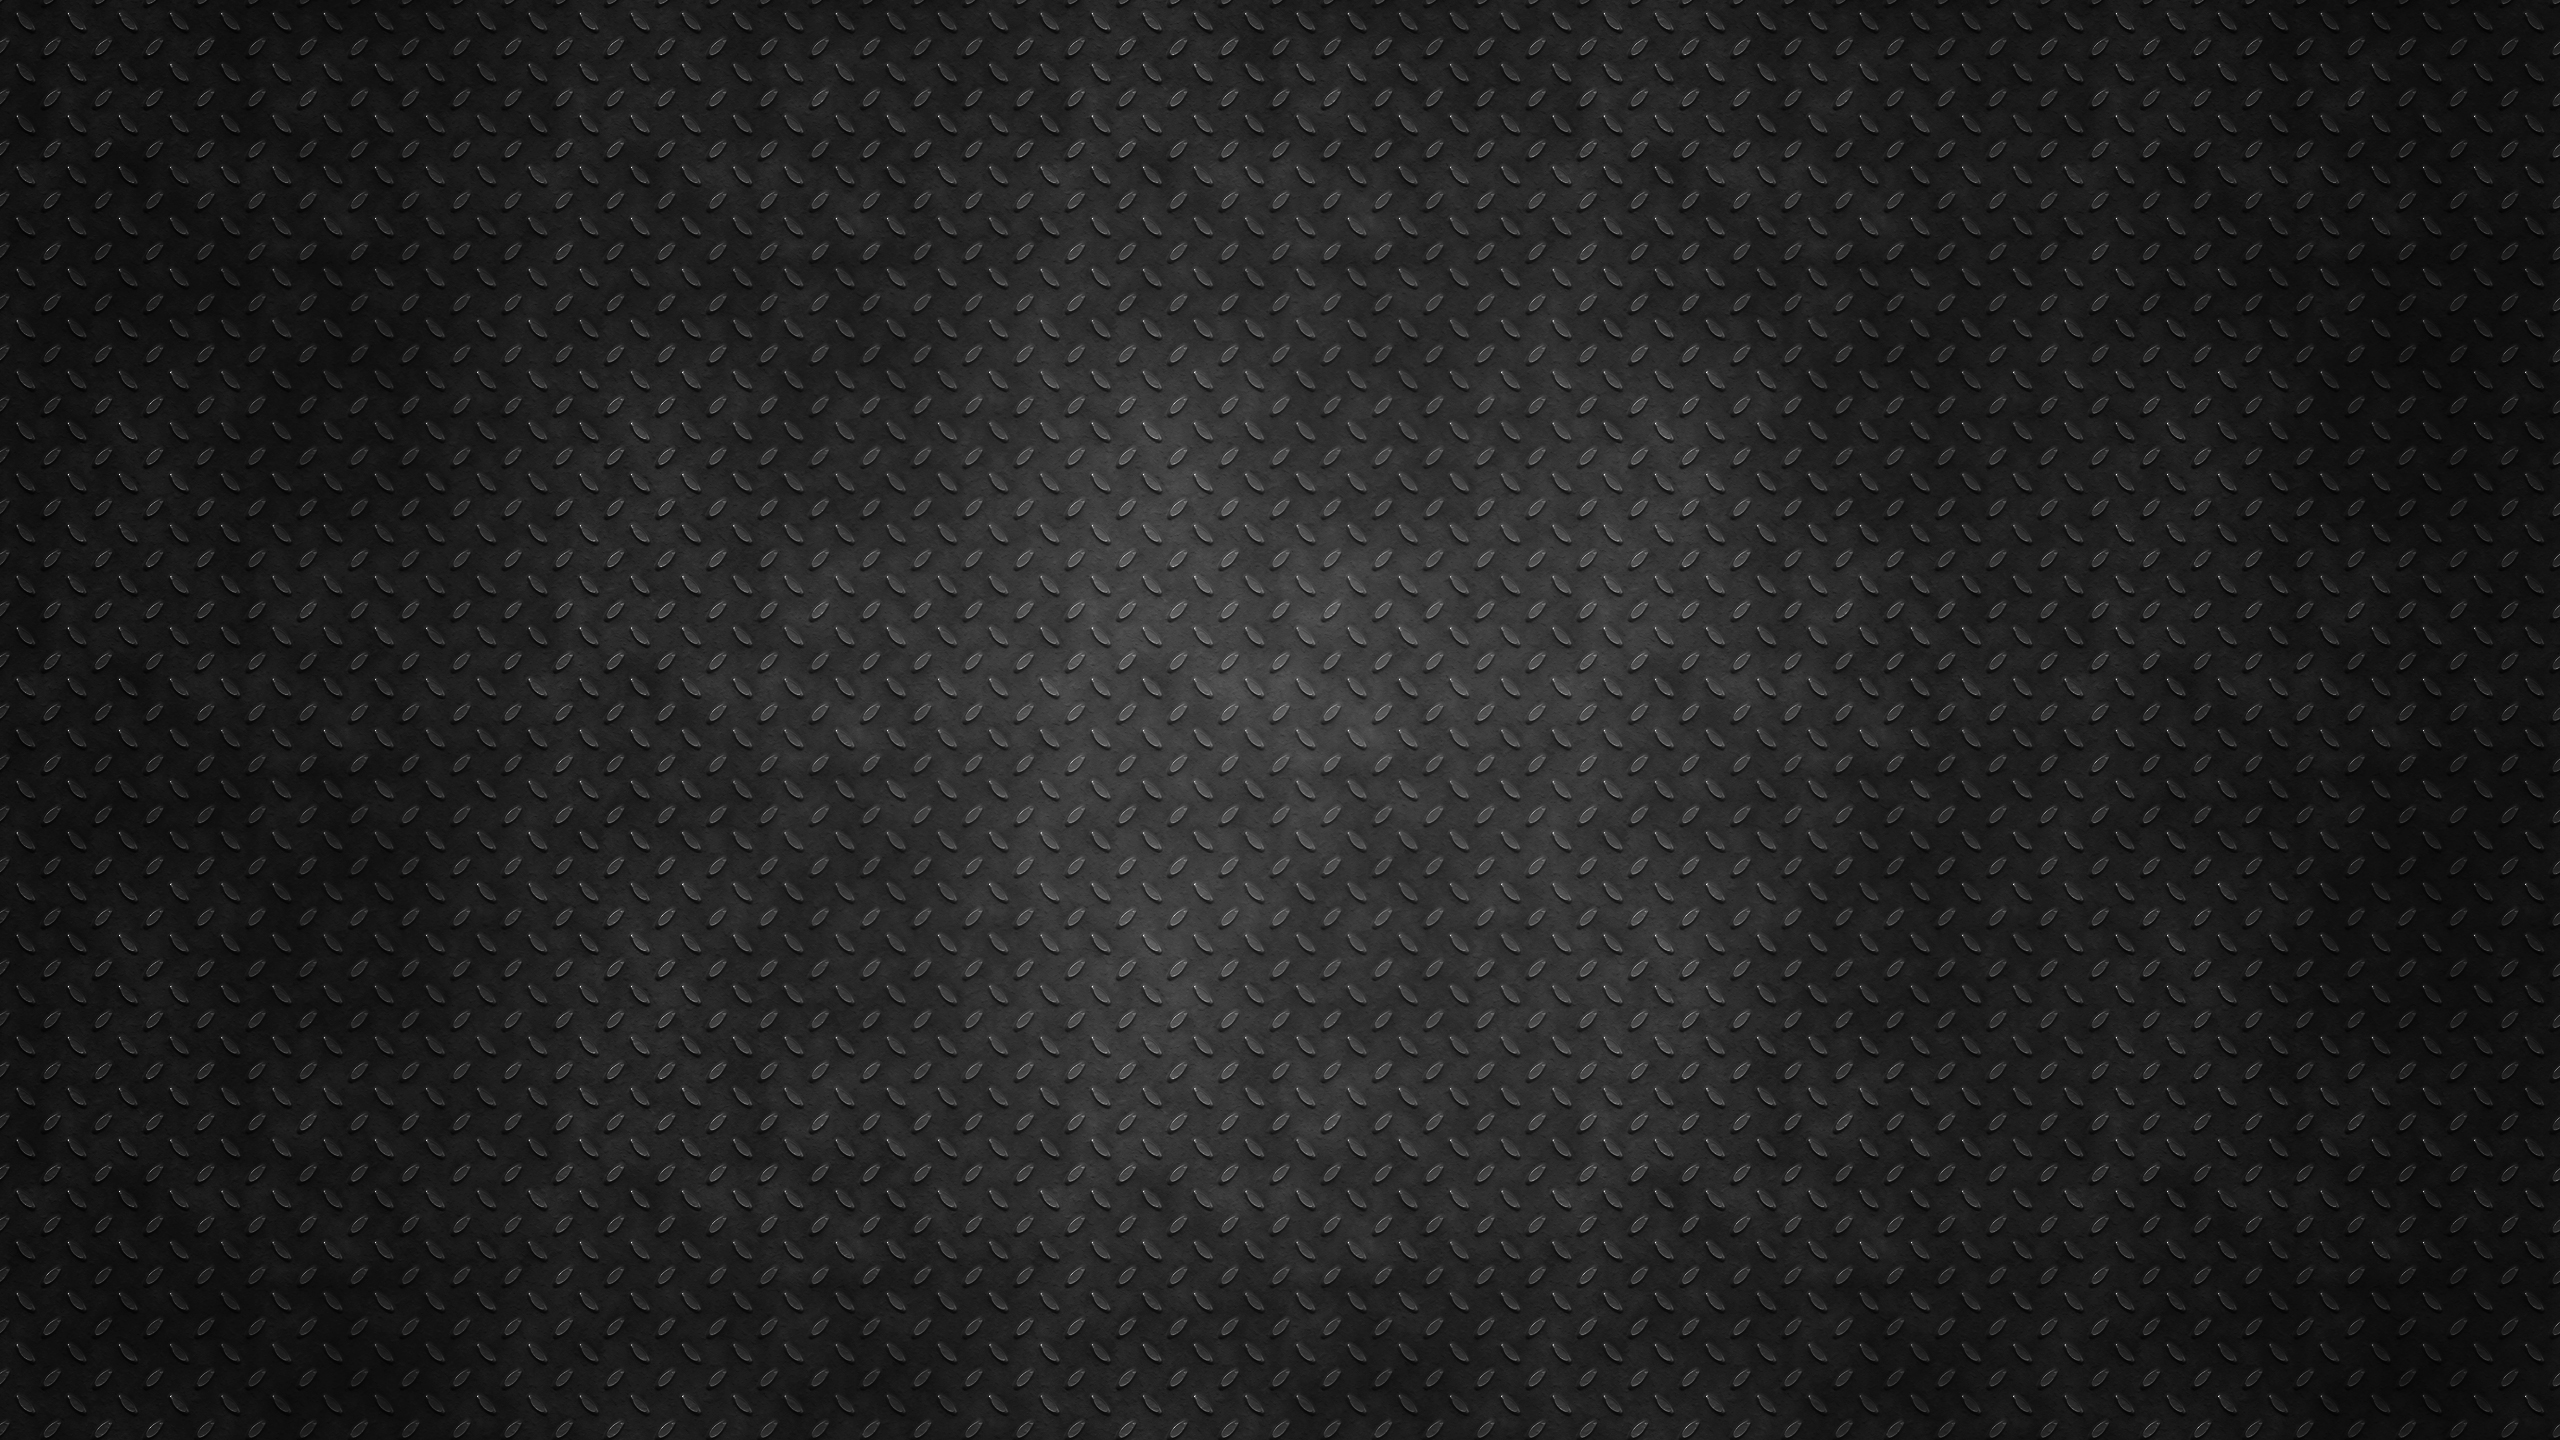 Schwarz-weiß Gepunktetes Textil. Wallpaper in 2560x1440 Resolution